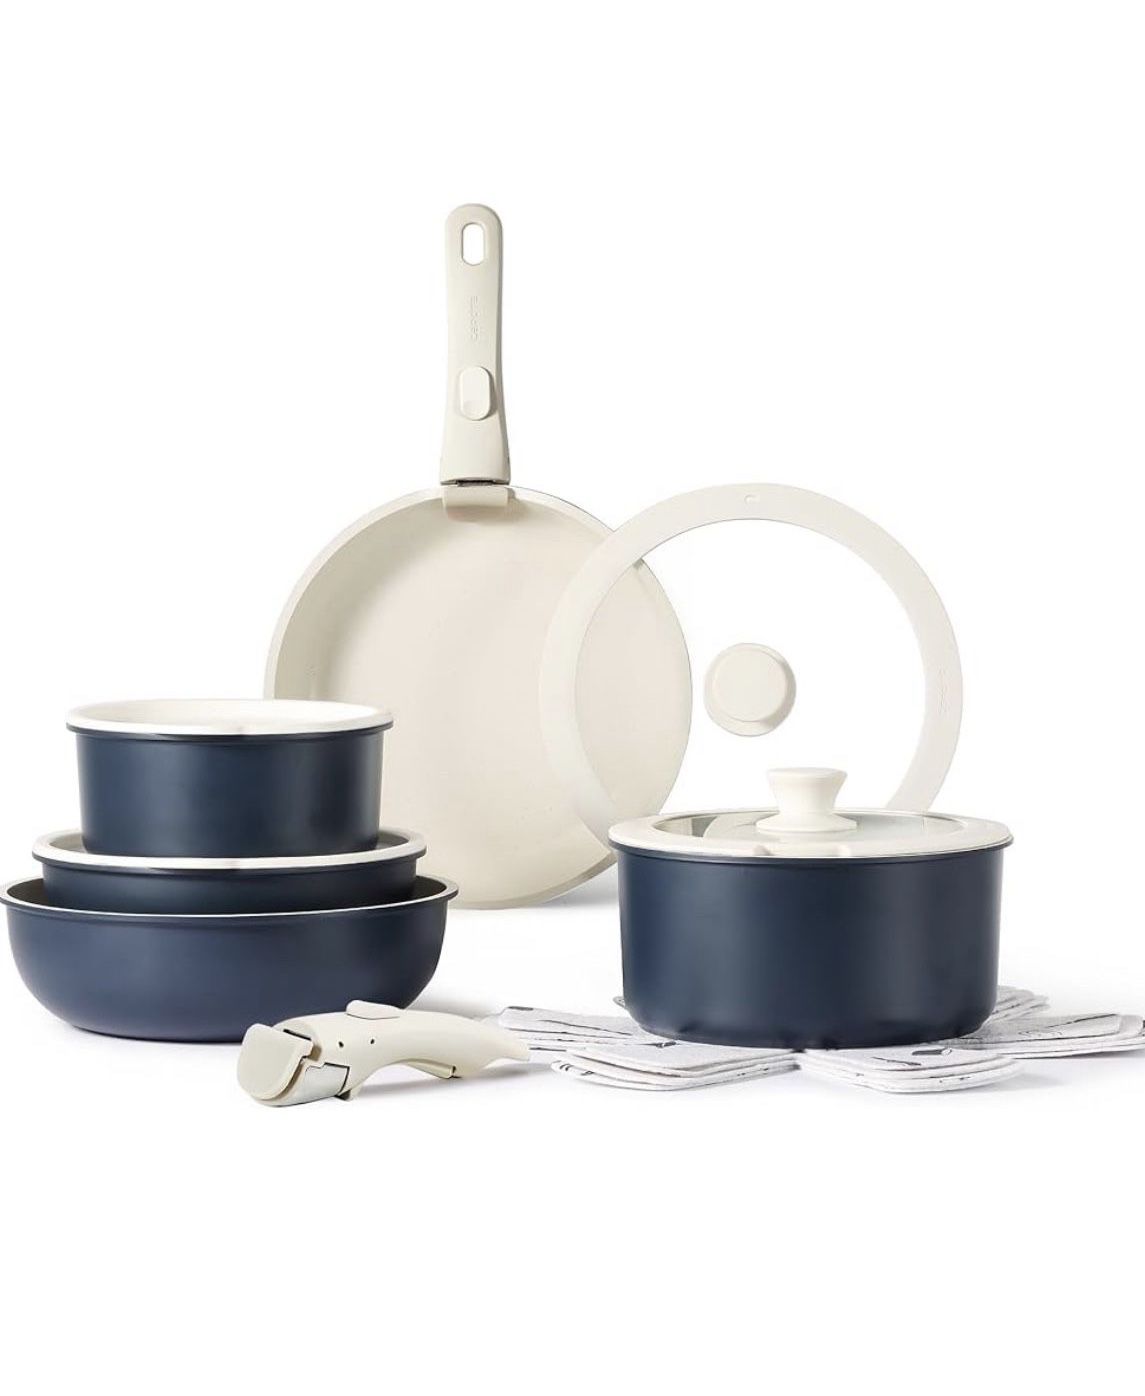 CAROTE 15pcs Pots and Pans Set, Nonstick Cookware Set Detachable Handle, Induction Kitchen Cookware Sets Non Stick with Removable Handle, RV Cookware 